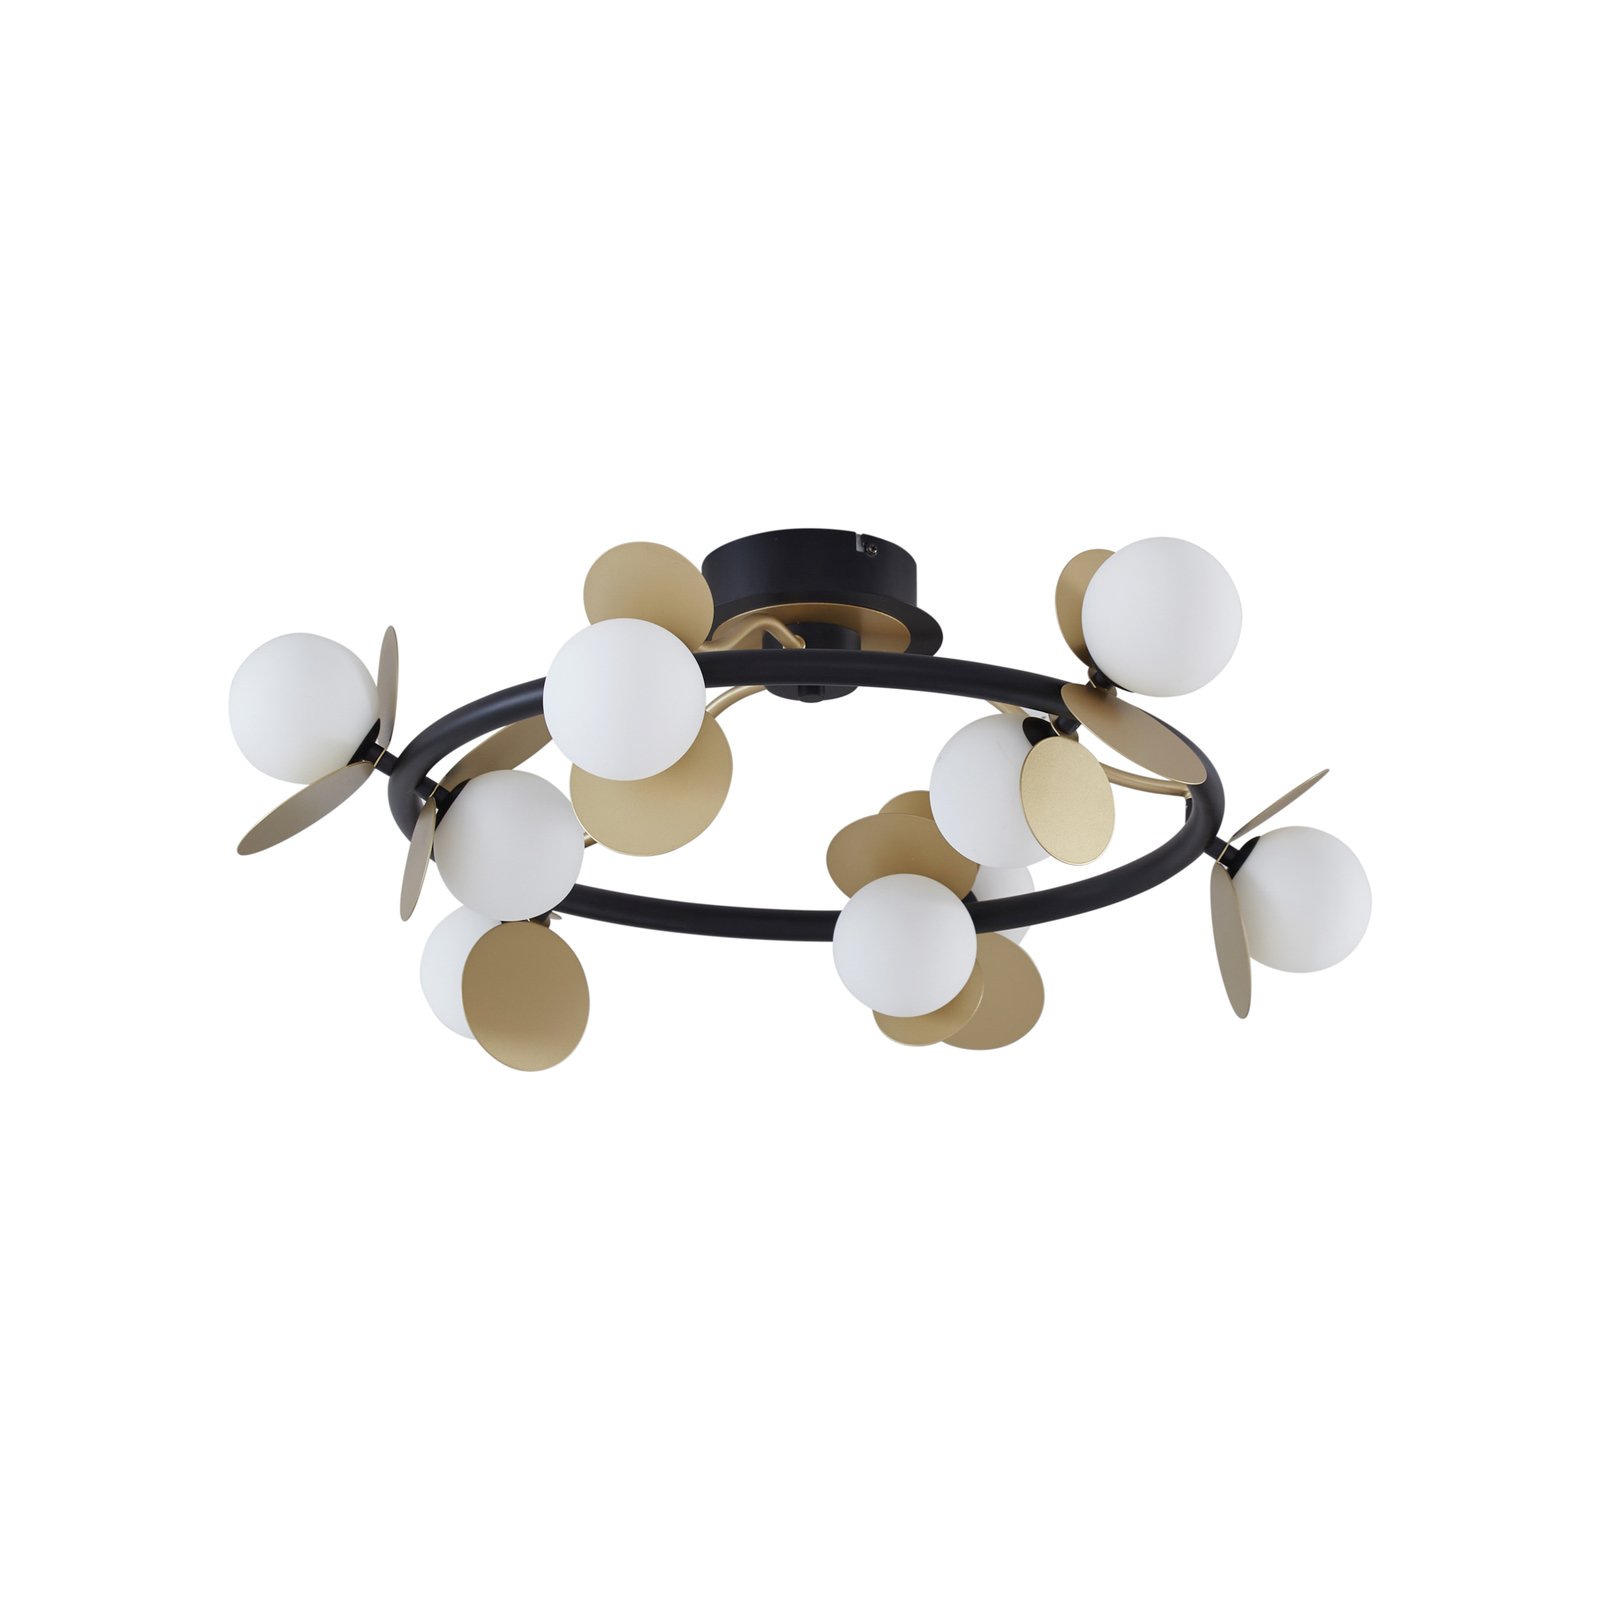 Lucande Pallo LED-Deckenlampe, rund, 9-flg., schwarz/gold